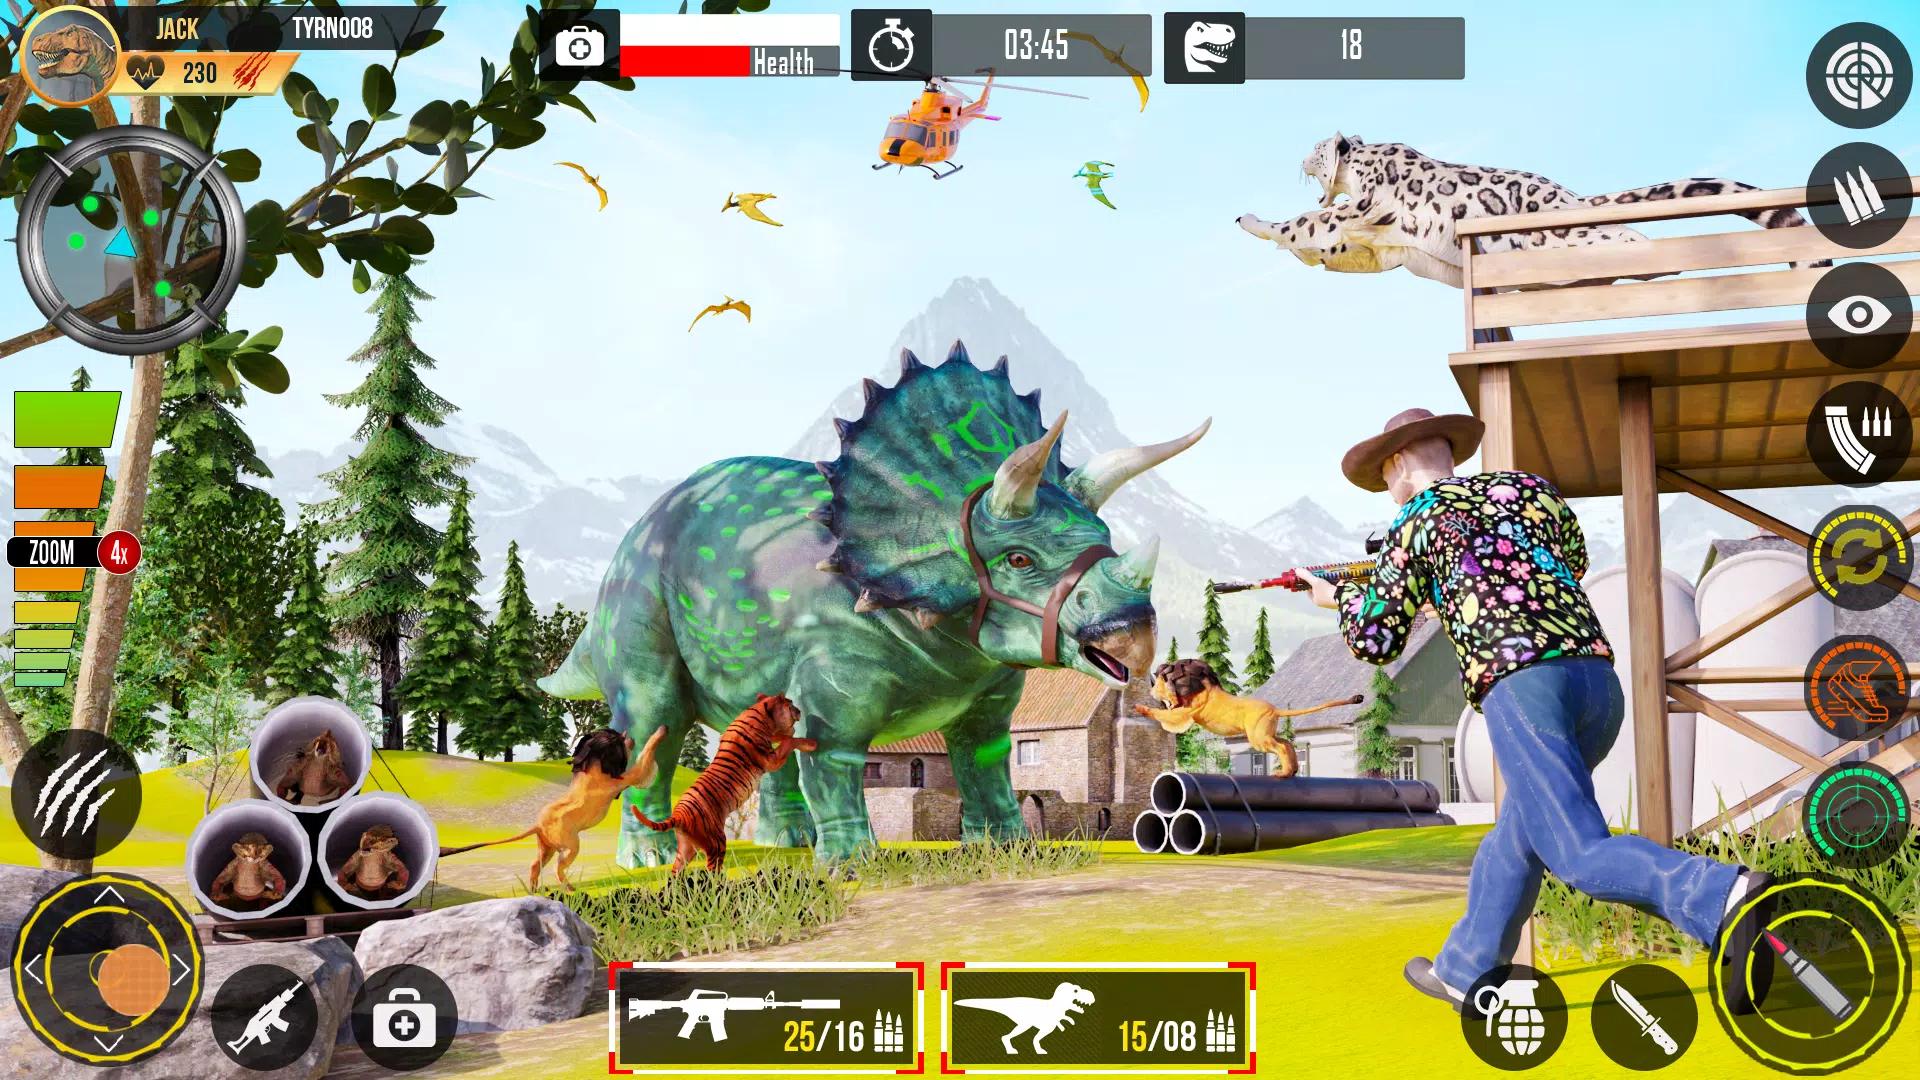 Download do APK de Caça ao Dinossauro Real Dino para Android